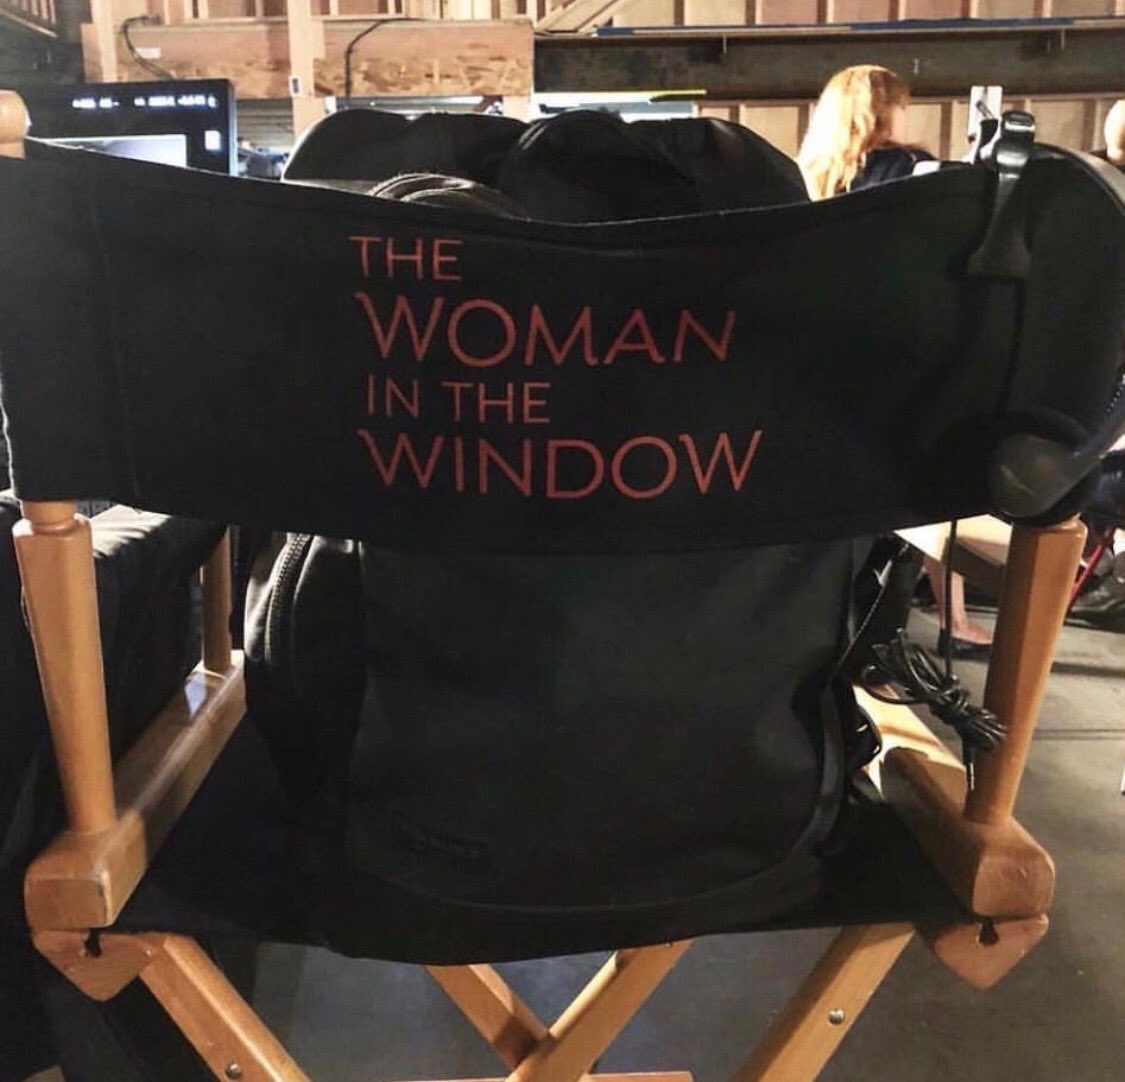  فیلم سینمایی The Woman in the Window به کارگردانی جو رایت